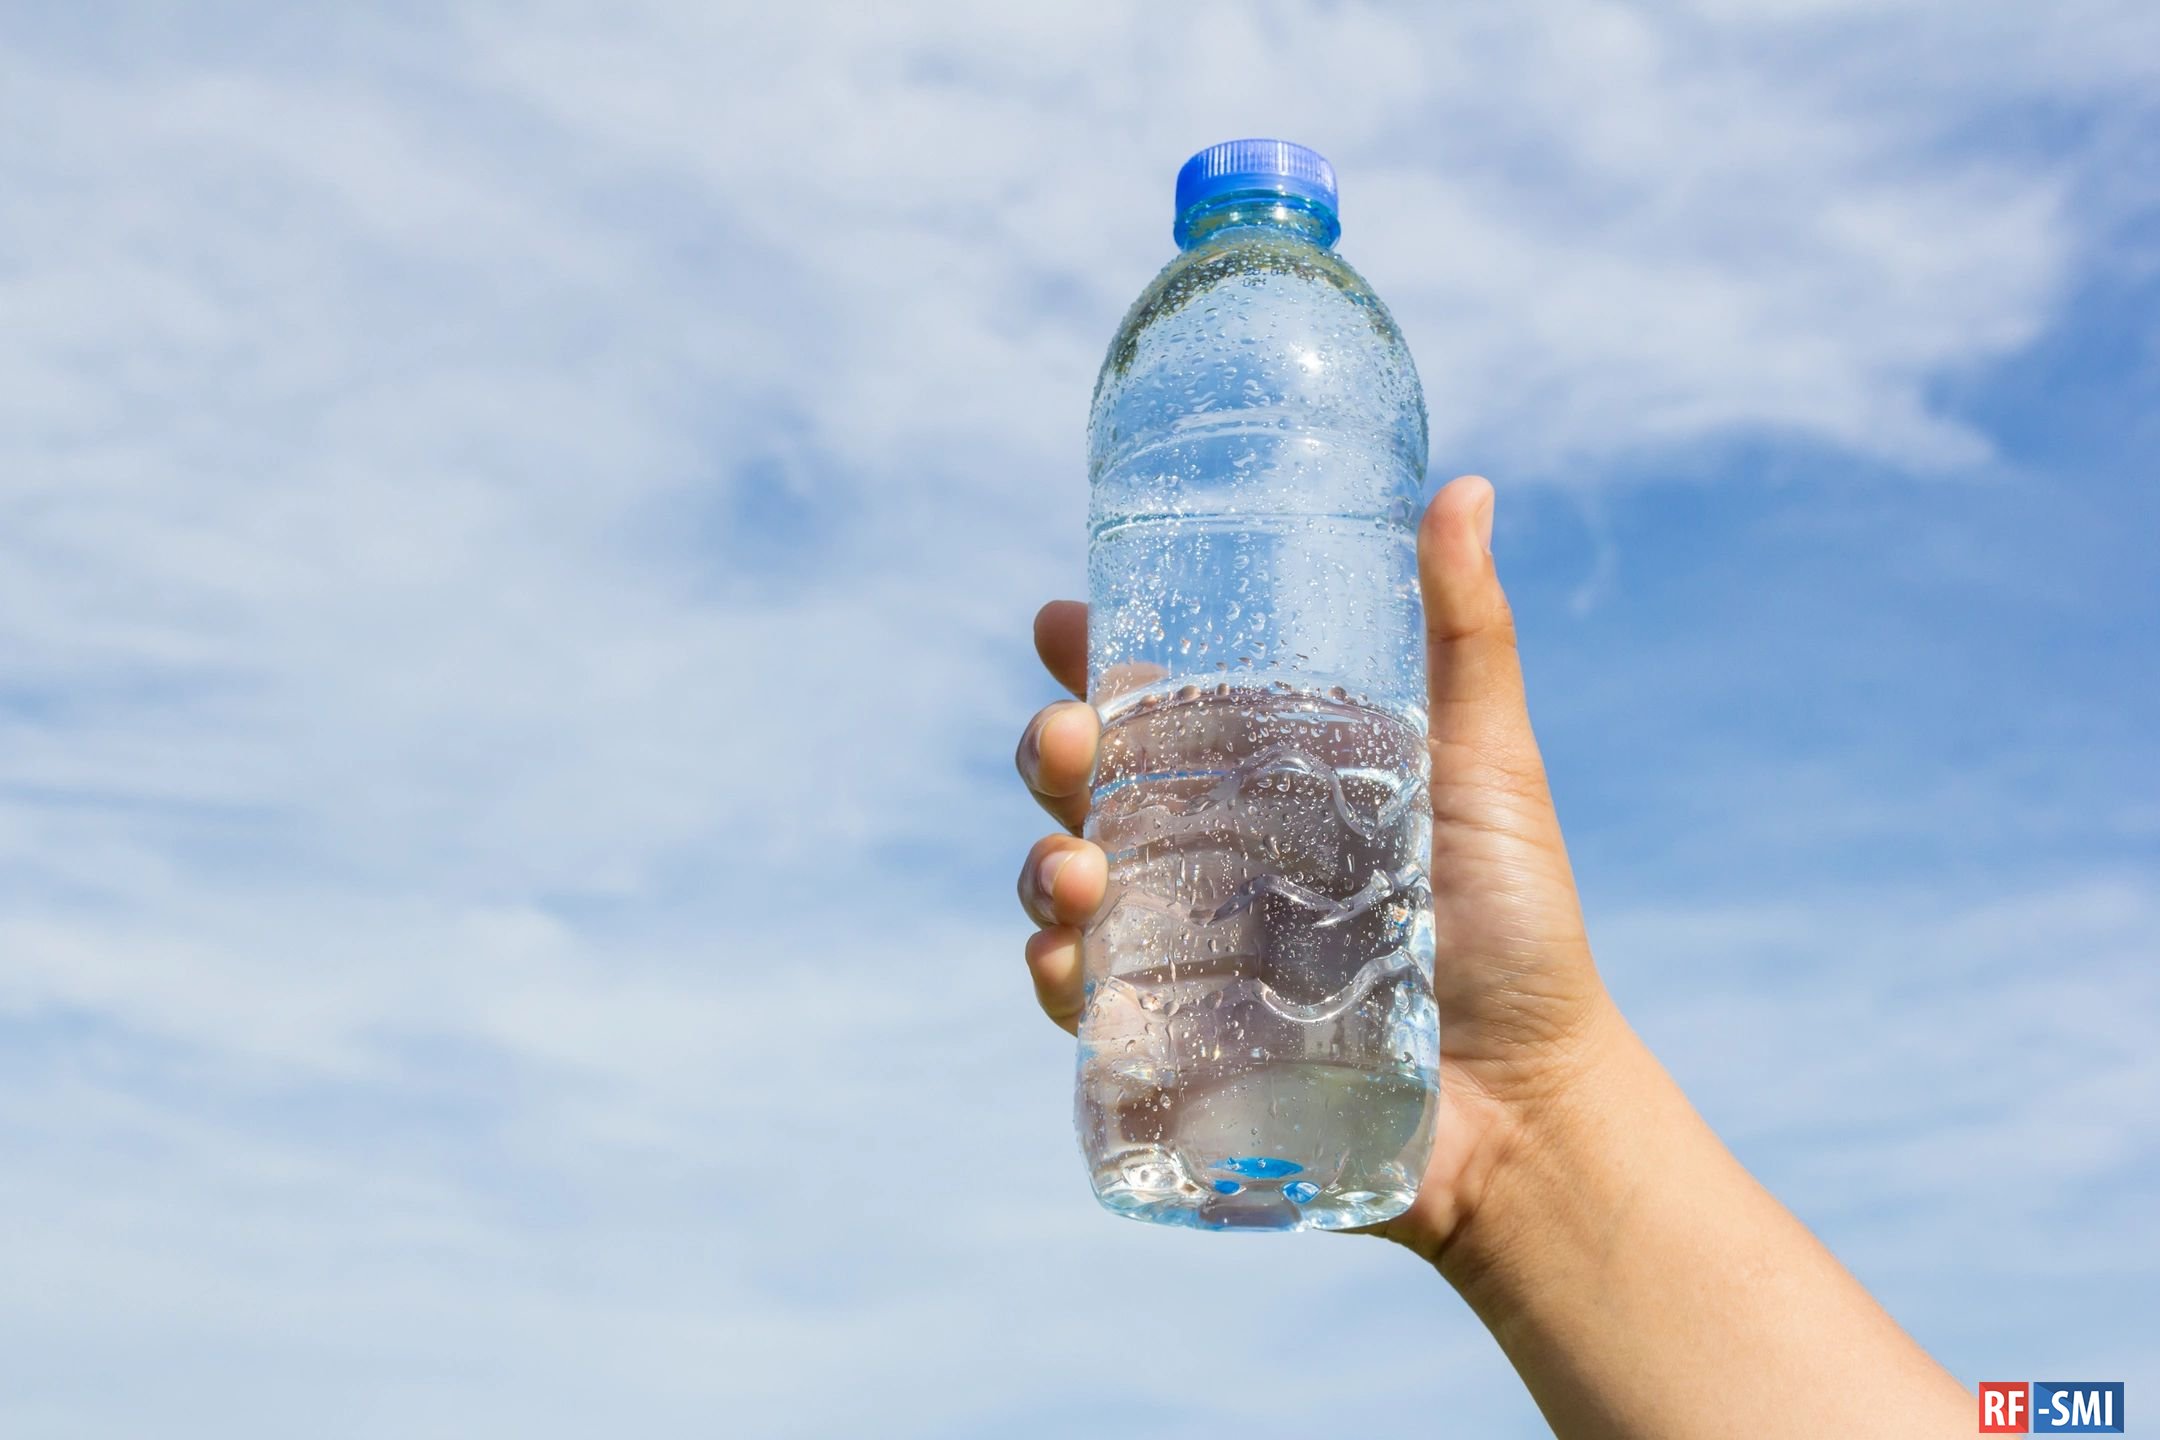 Вес бутылки с водой. Бутылка для воды. Пластиковая бутылка для воды. Бутылка воды в руке. Питьевые бутылочки для воды.